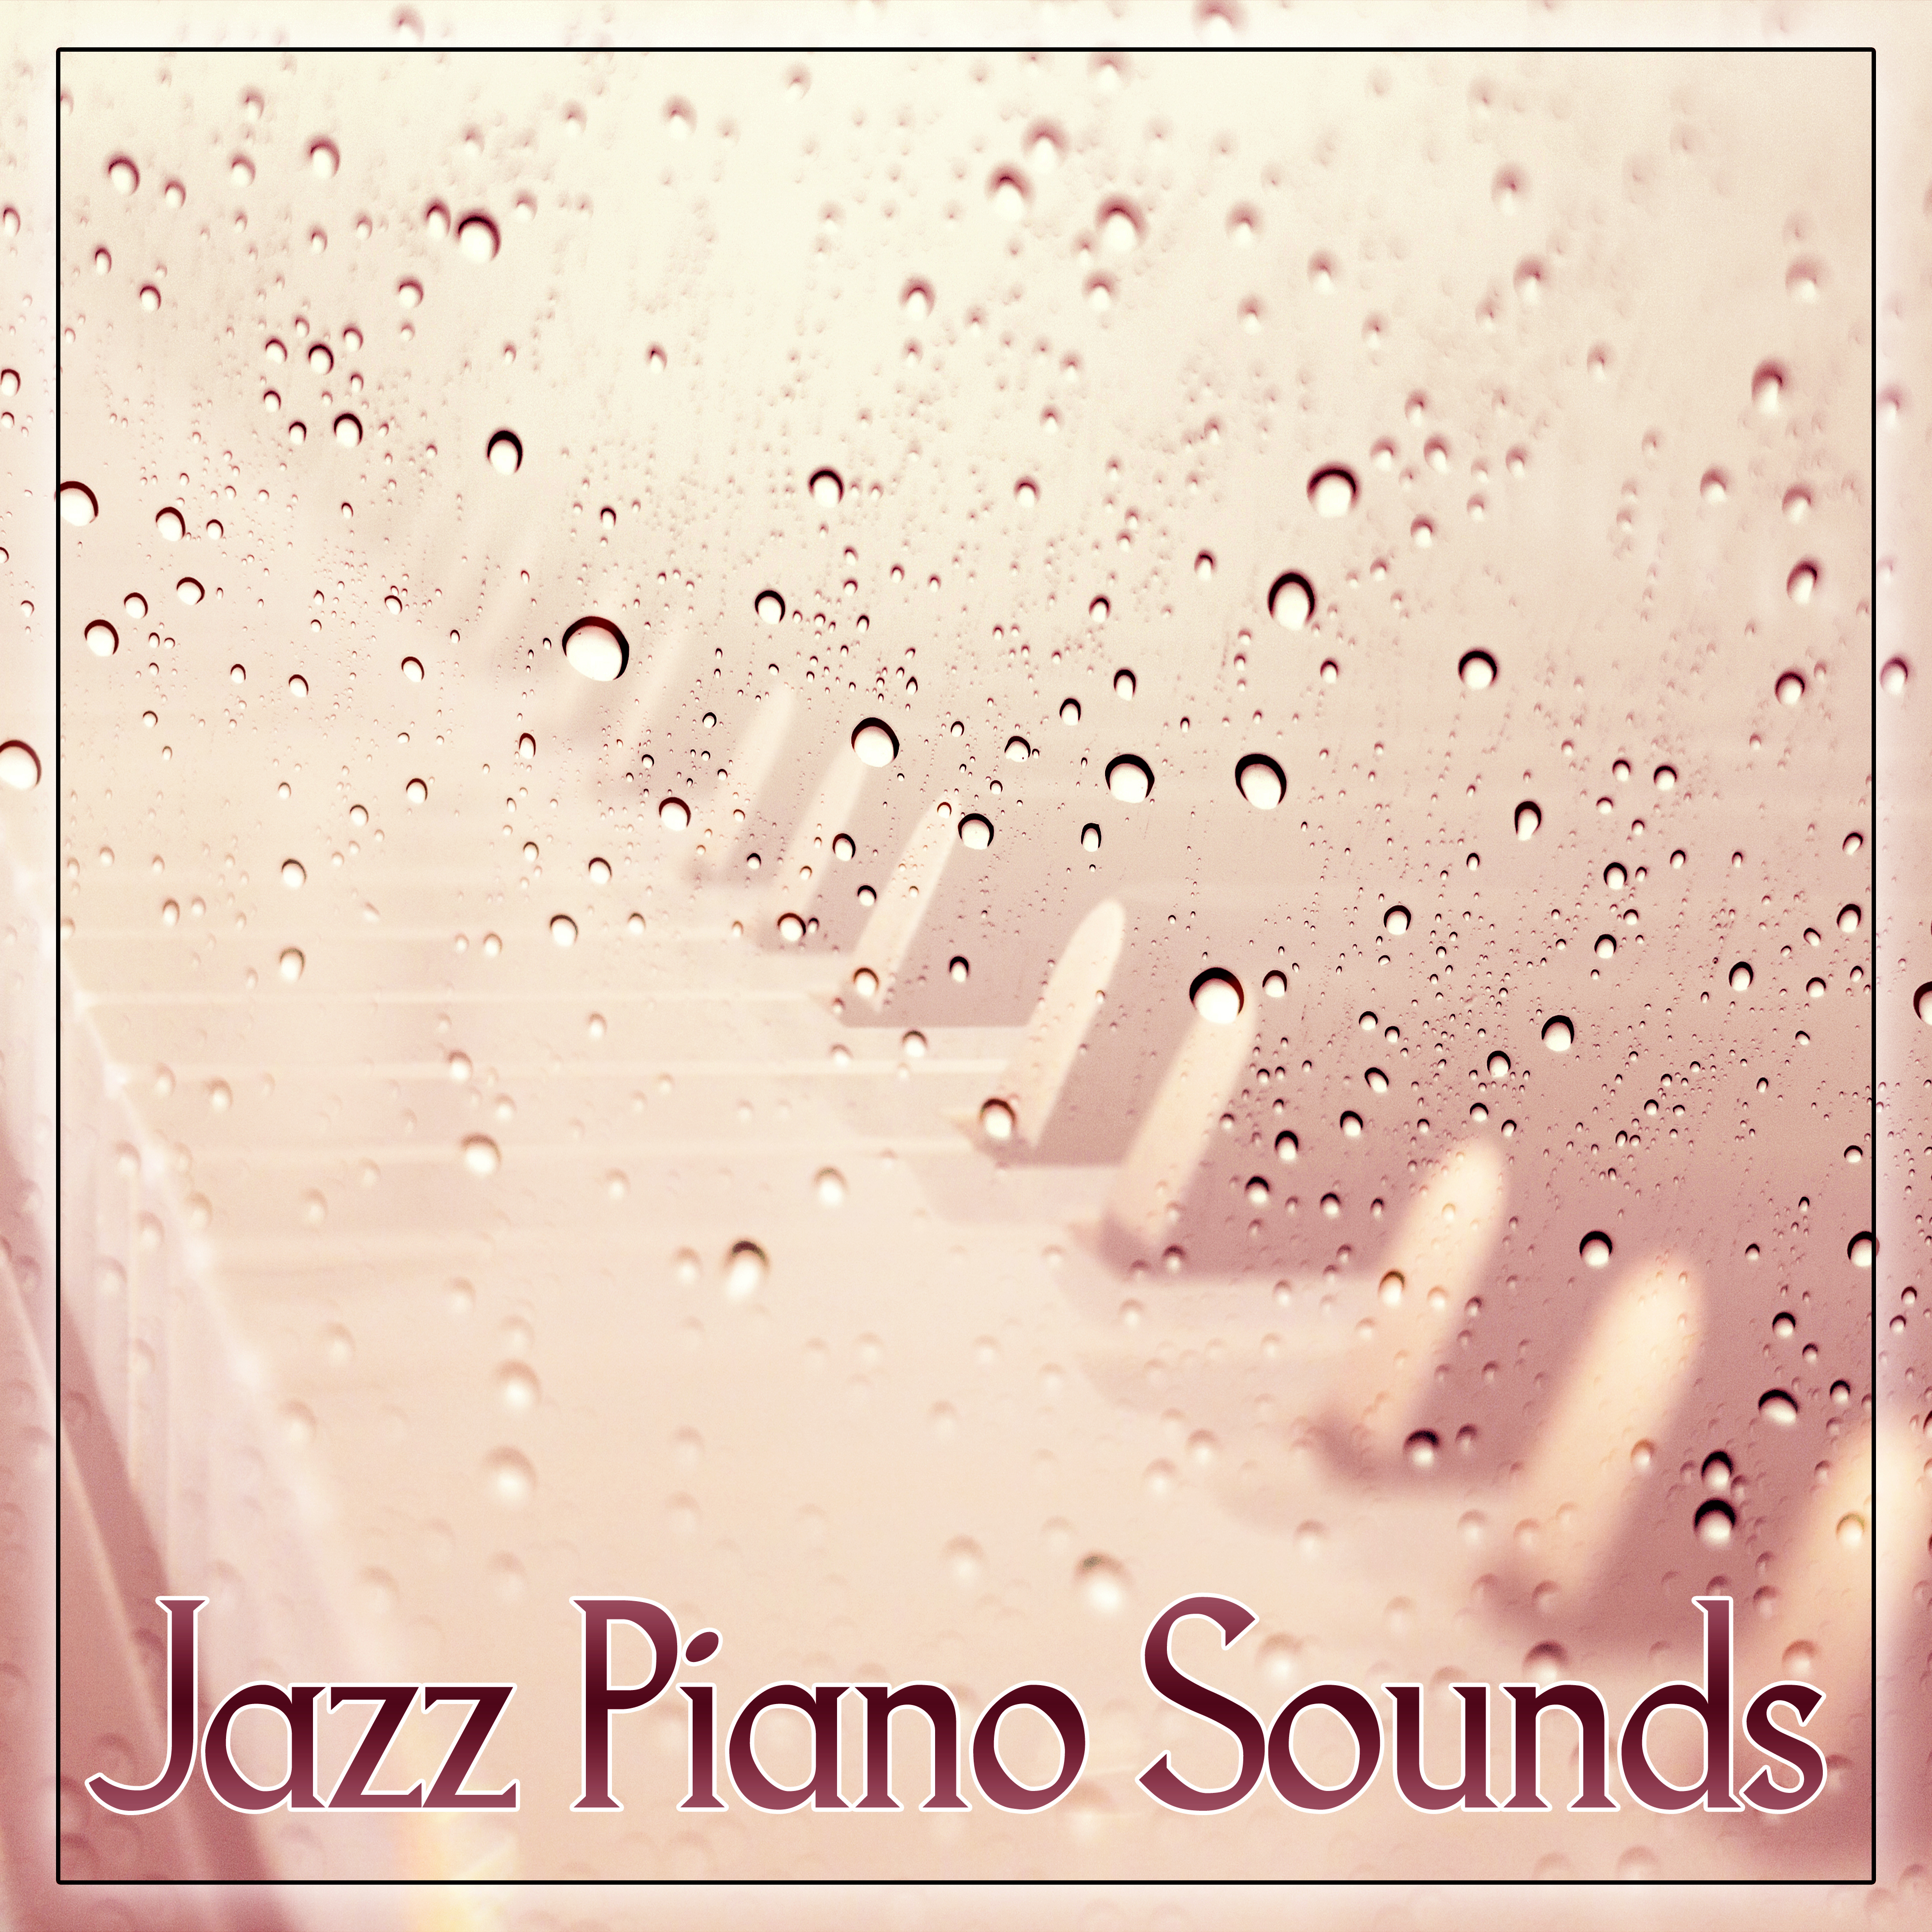 Jazz Piano Sounds  Best Background Jazz Music for Jazz Club  Jazz Bar, Easy Listening, Mellow Jazz, Calming Jazz Sounds